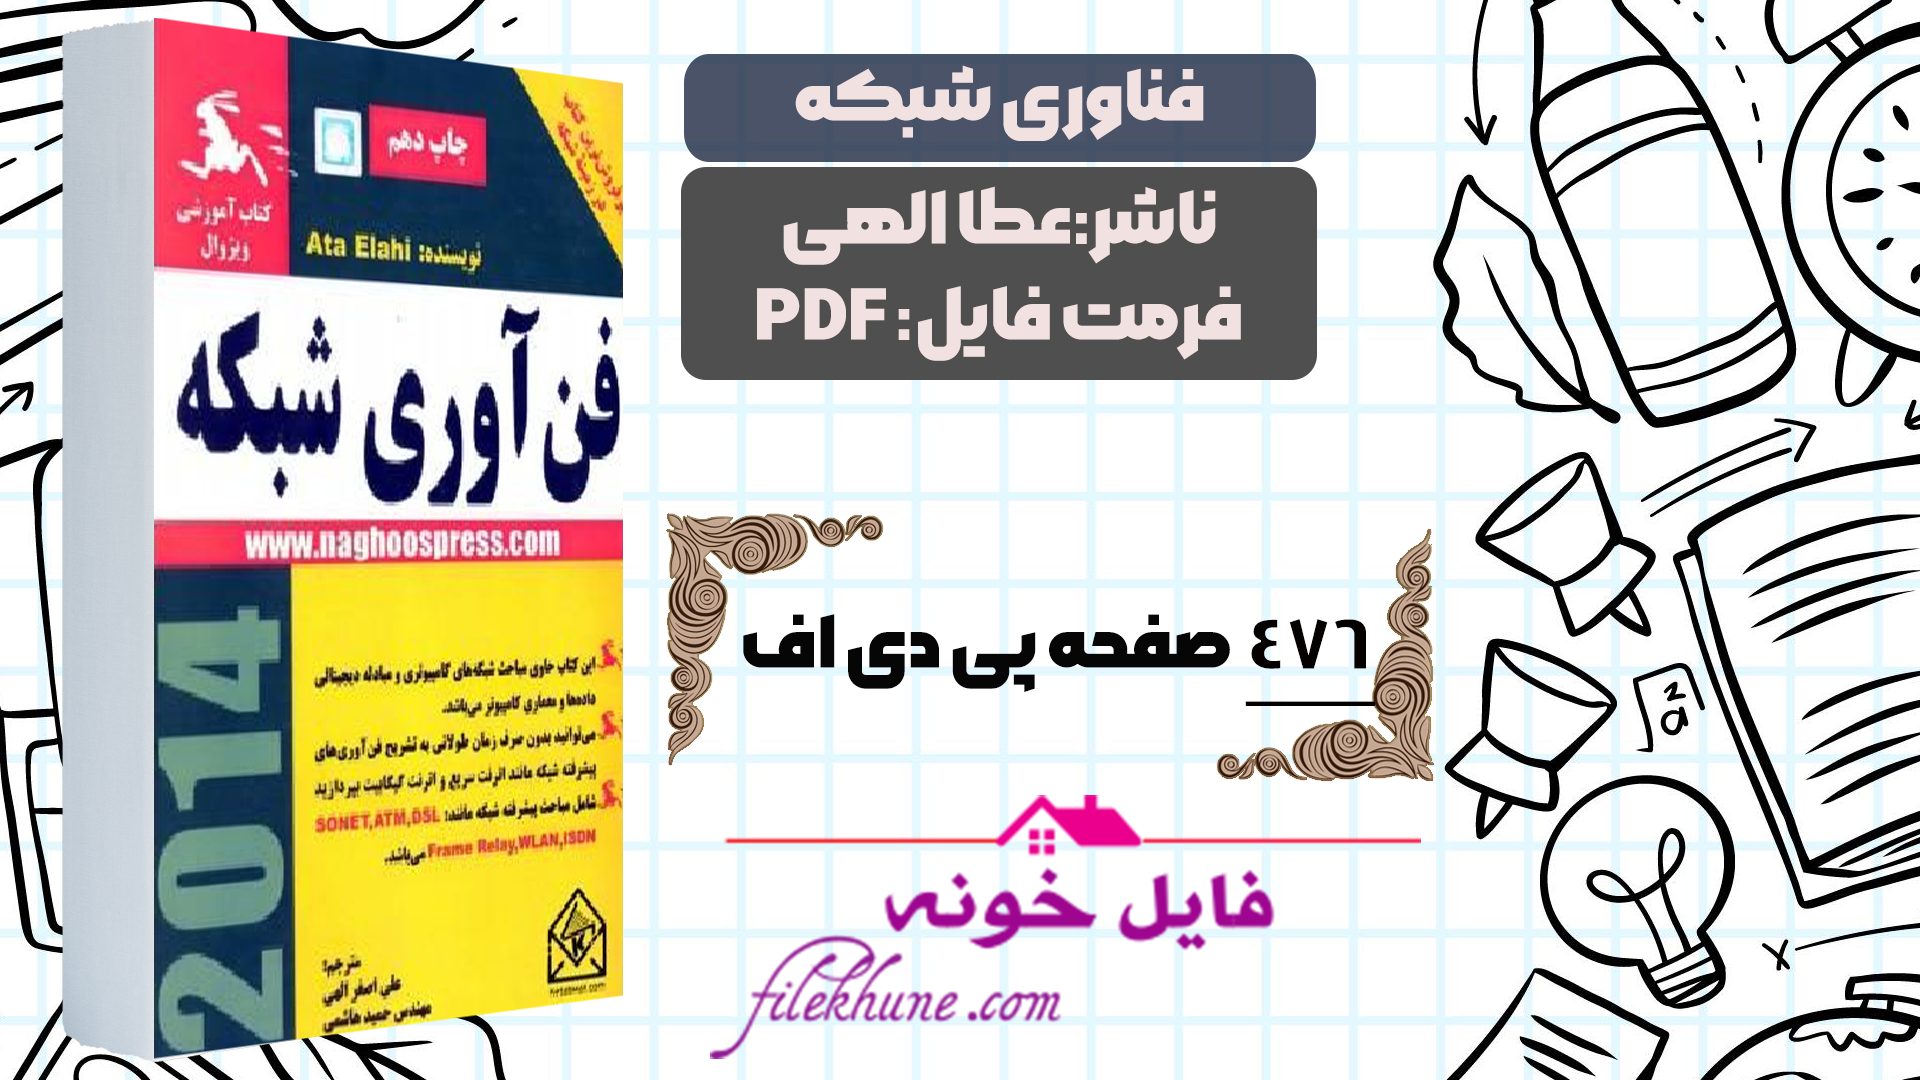 دانلود کتاب فناوری شبکه عطا الهی با ترجمه فارسی PDF - فایل خونه